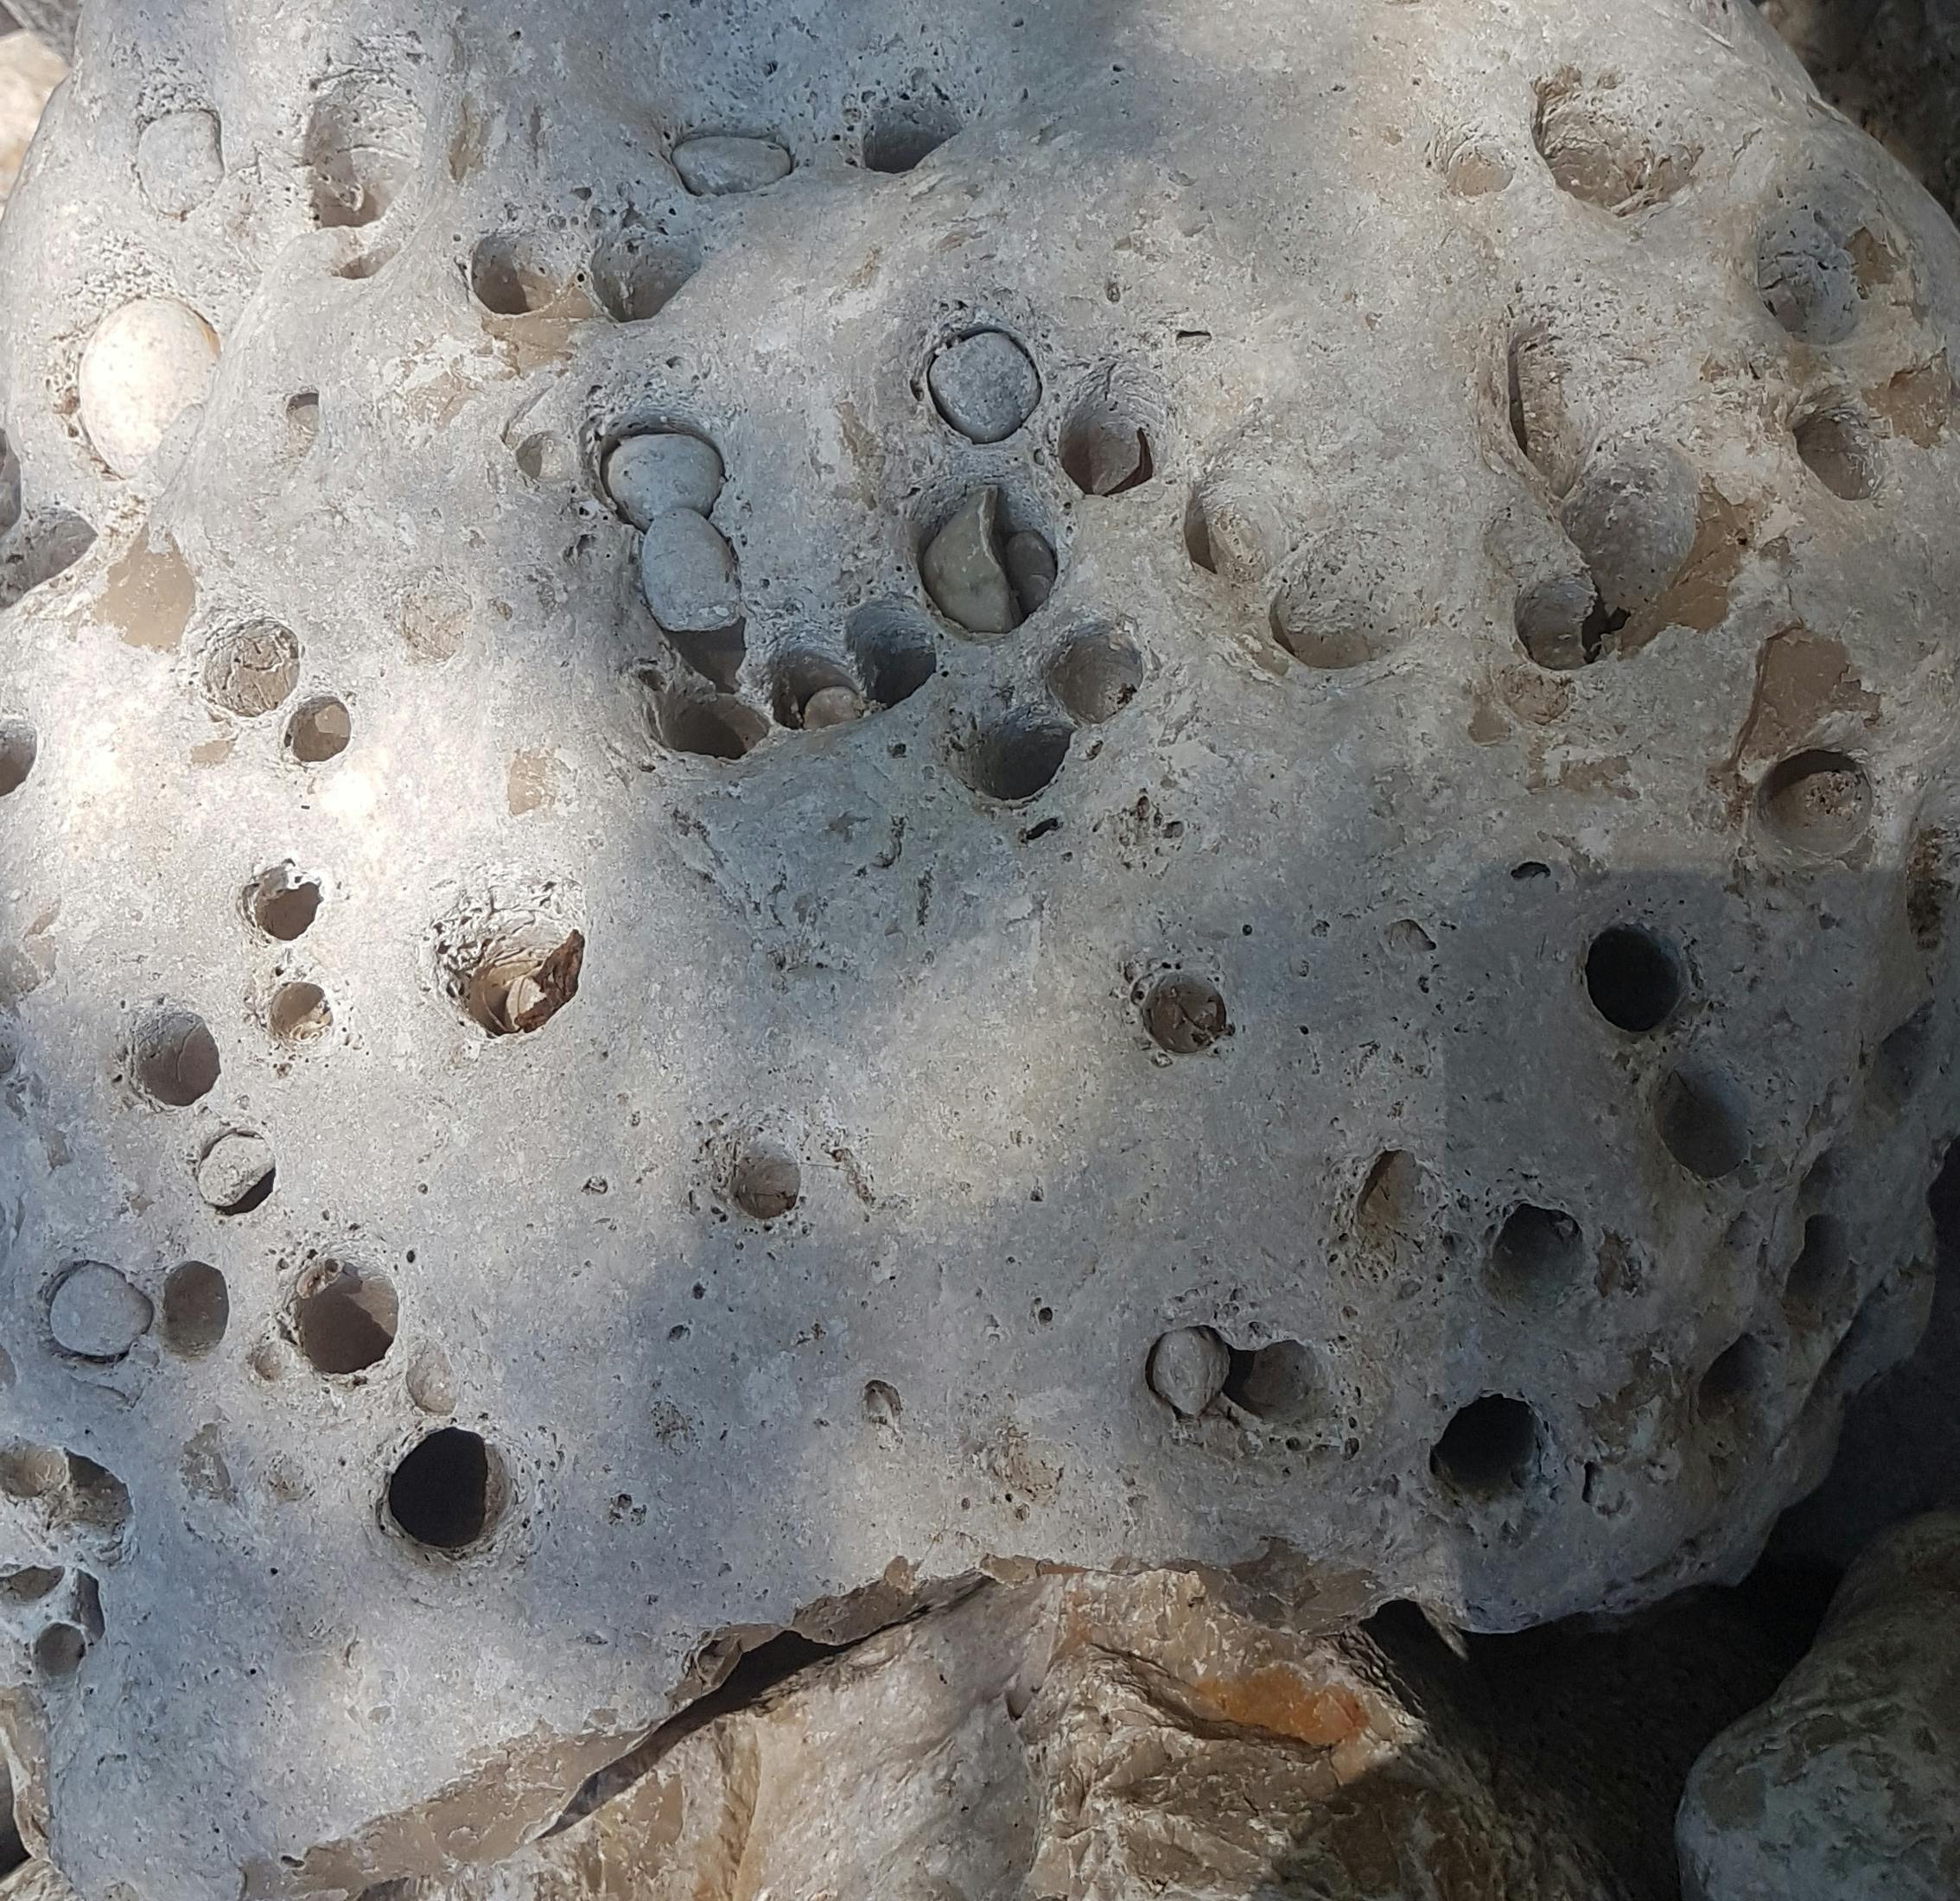 Hintergrundbild eines durchlöcherten Steines.